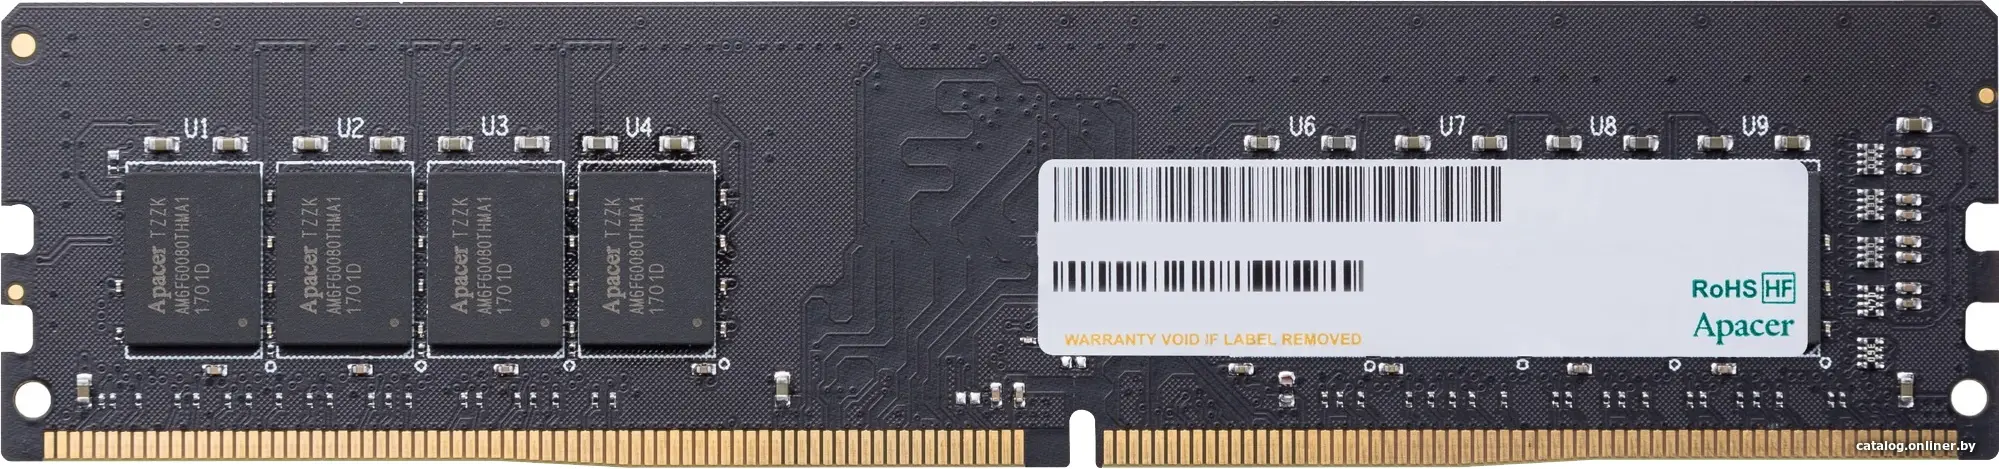 Купить Apacer  DDR4   8GB  3200MHz DIMM (PC4-25600) CL22 1.2V (Retail) 1024*8  3 years (AU08GGB32CSYBGH/EL.08G21.GSH), цена, опт и розница